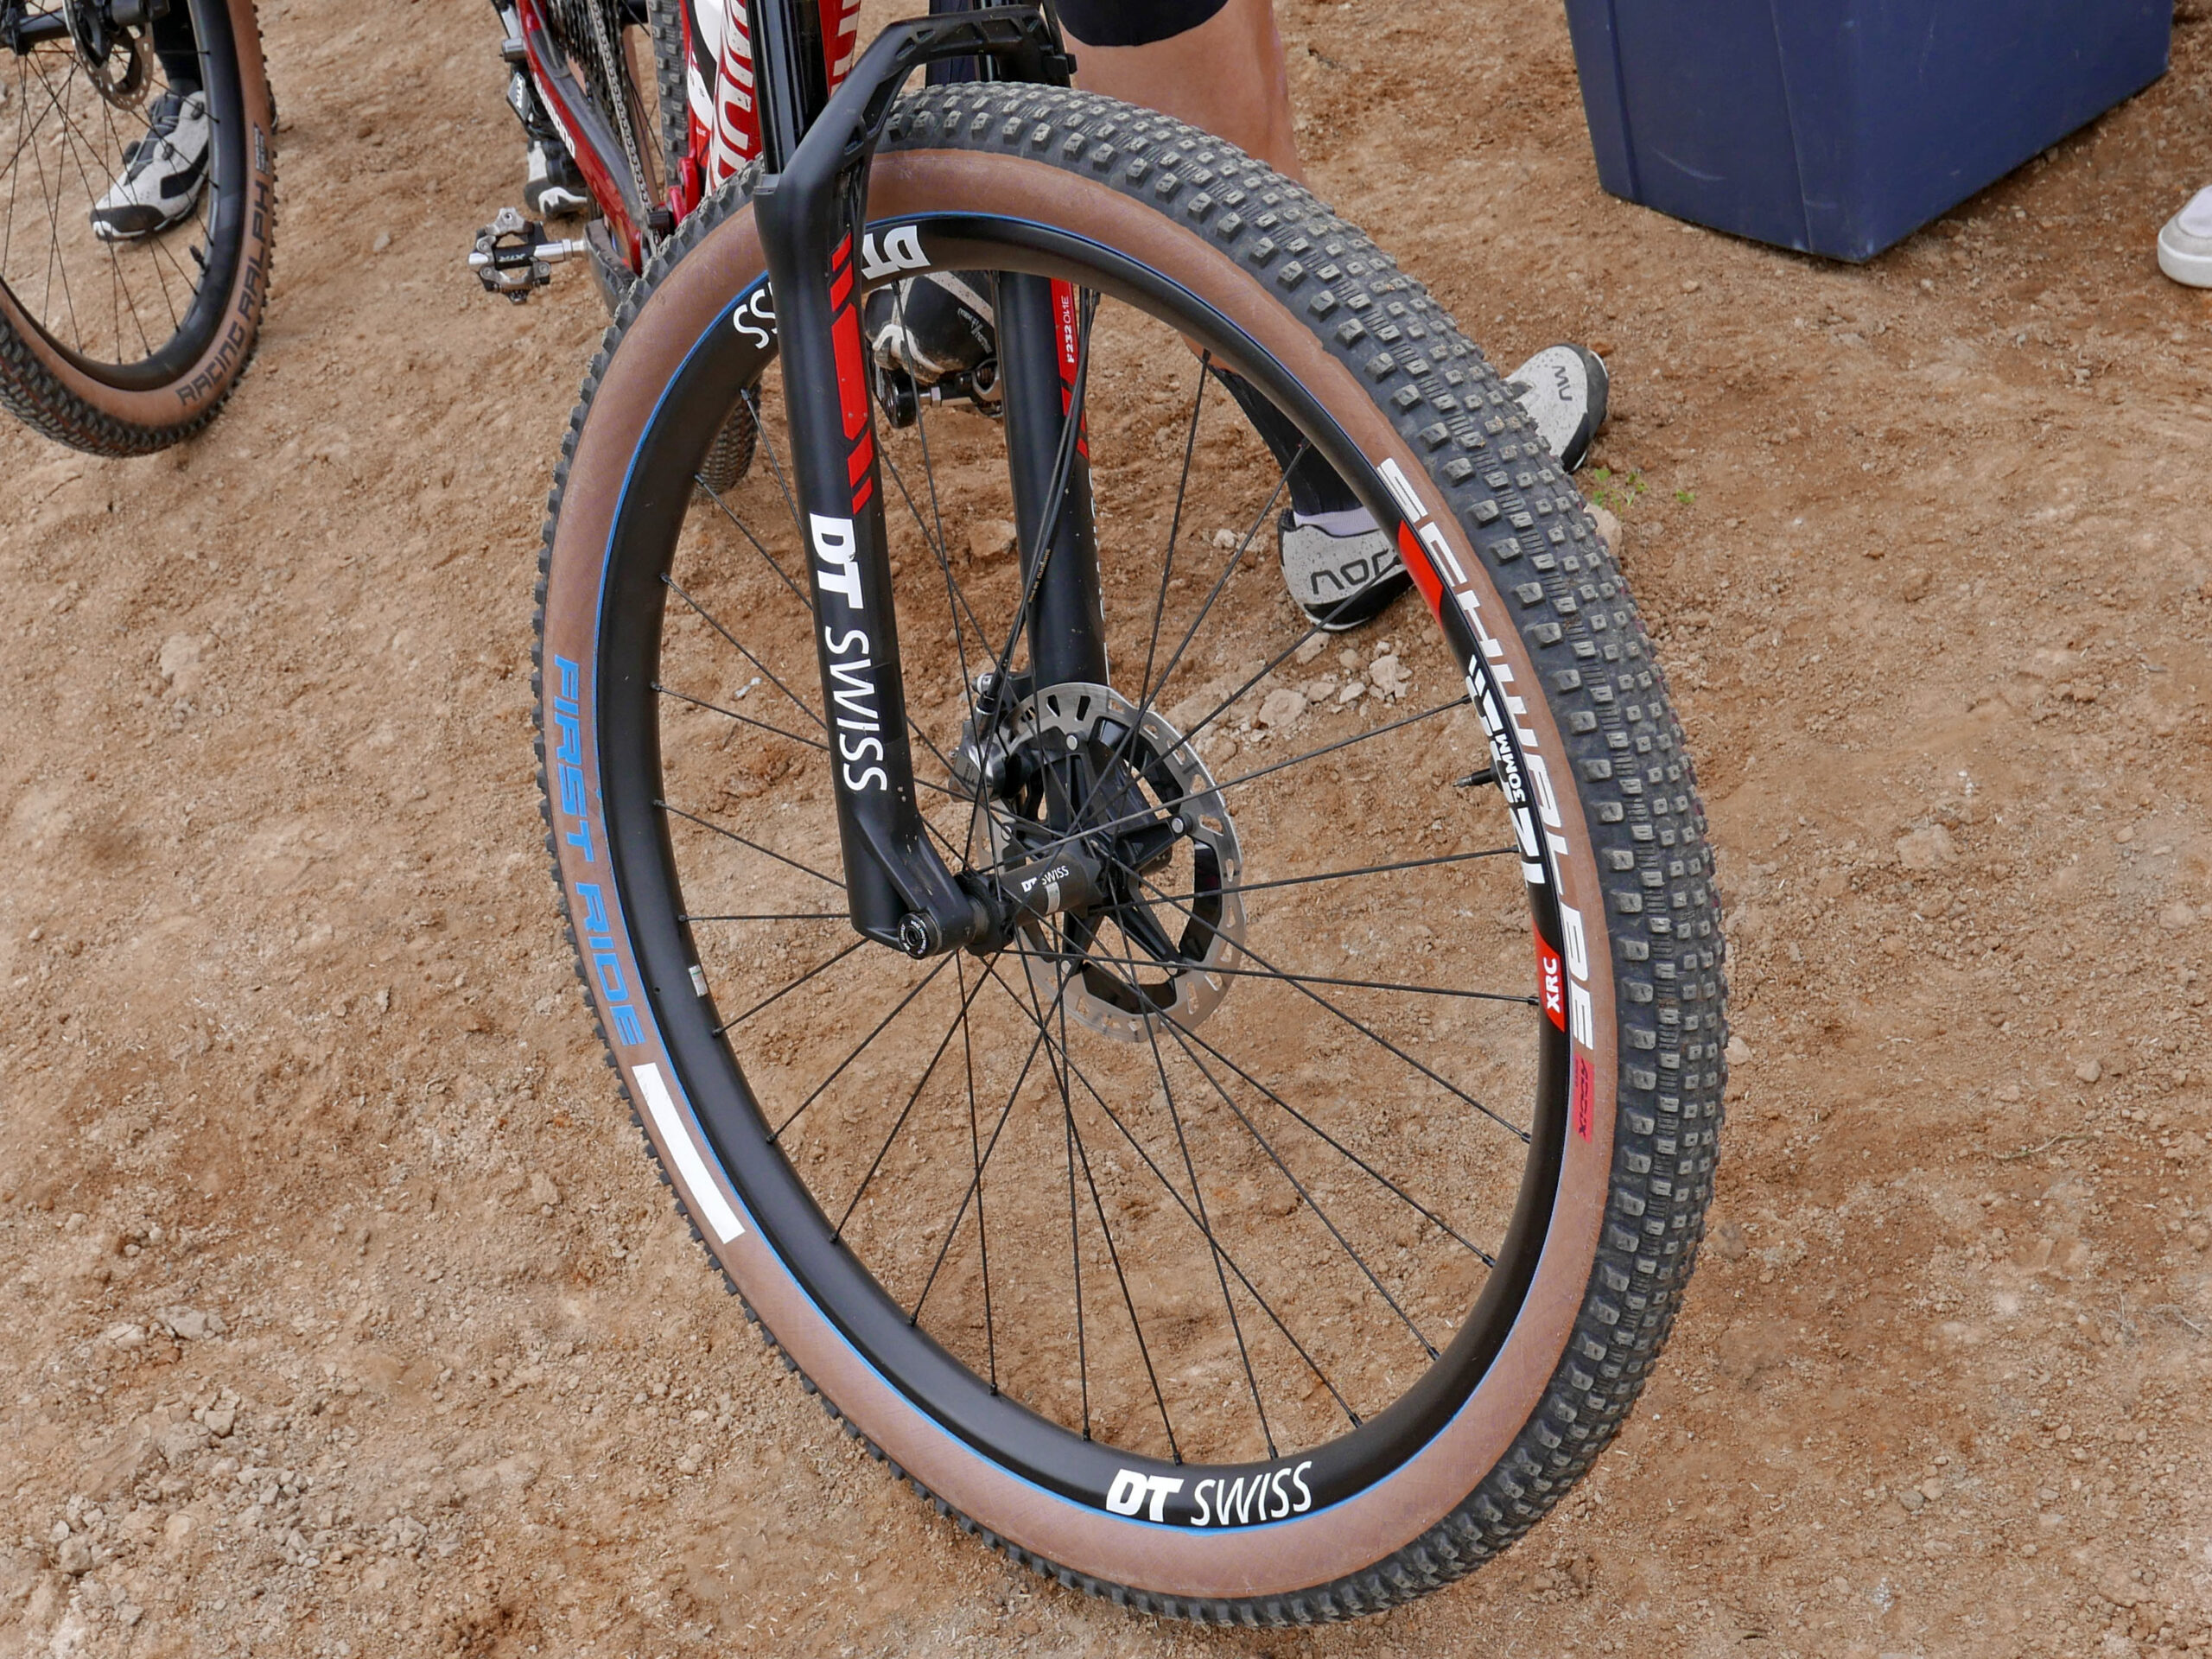 MTB Tires - Enduro, Downhill, XC, Freeride & FatBikes